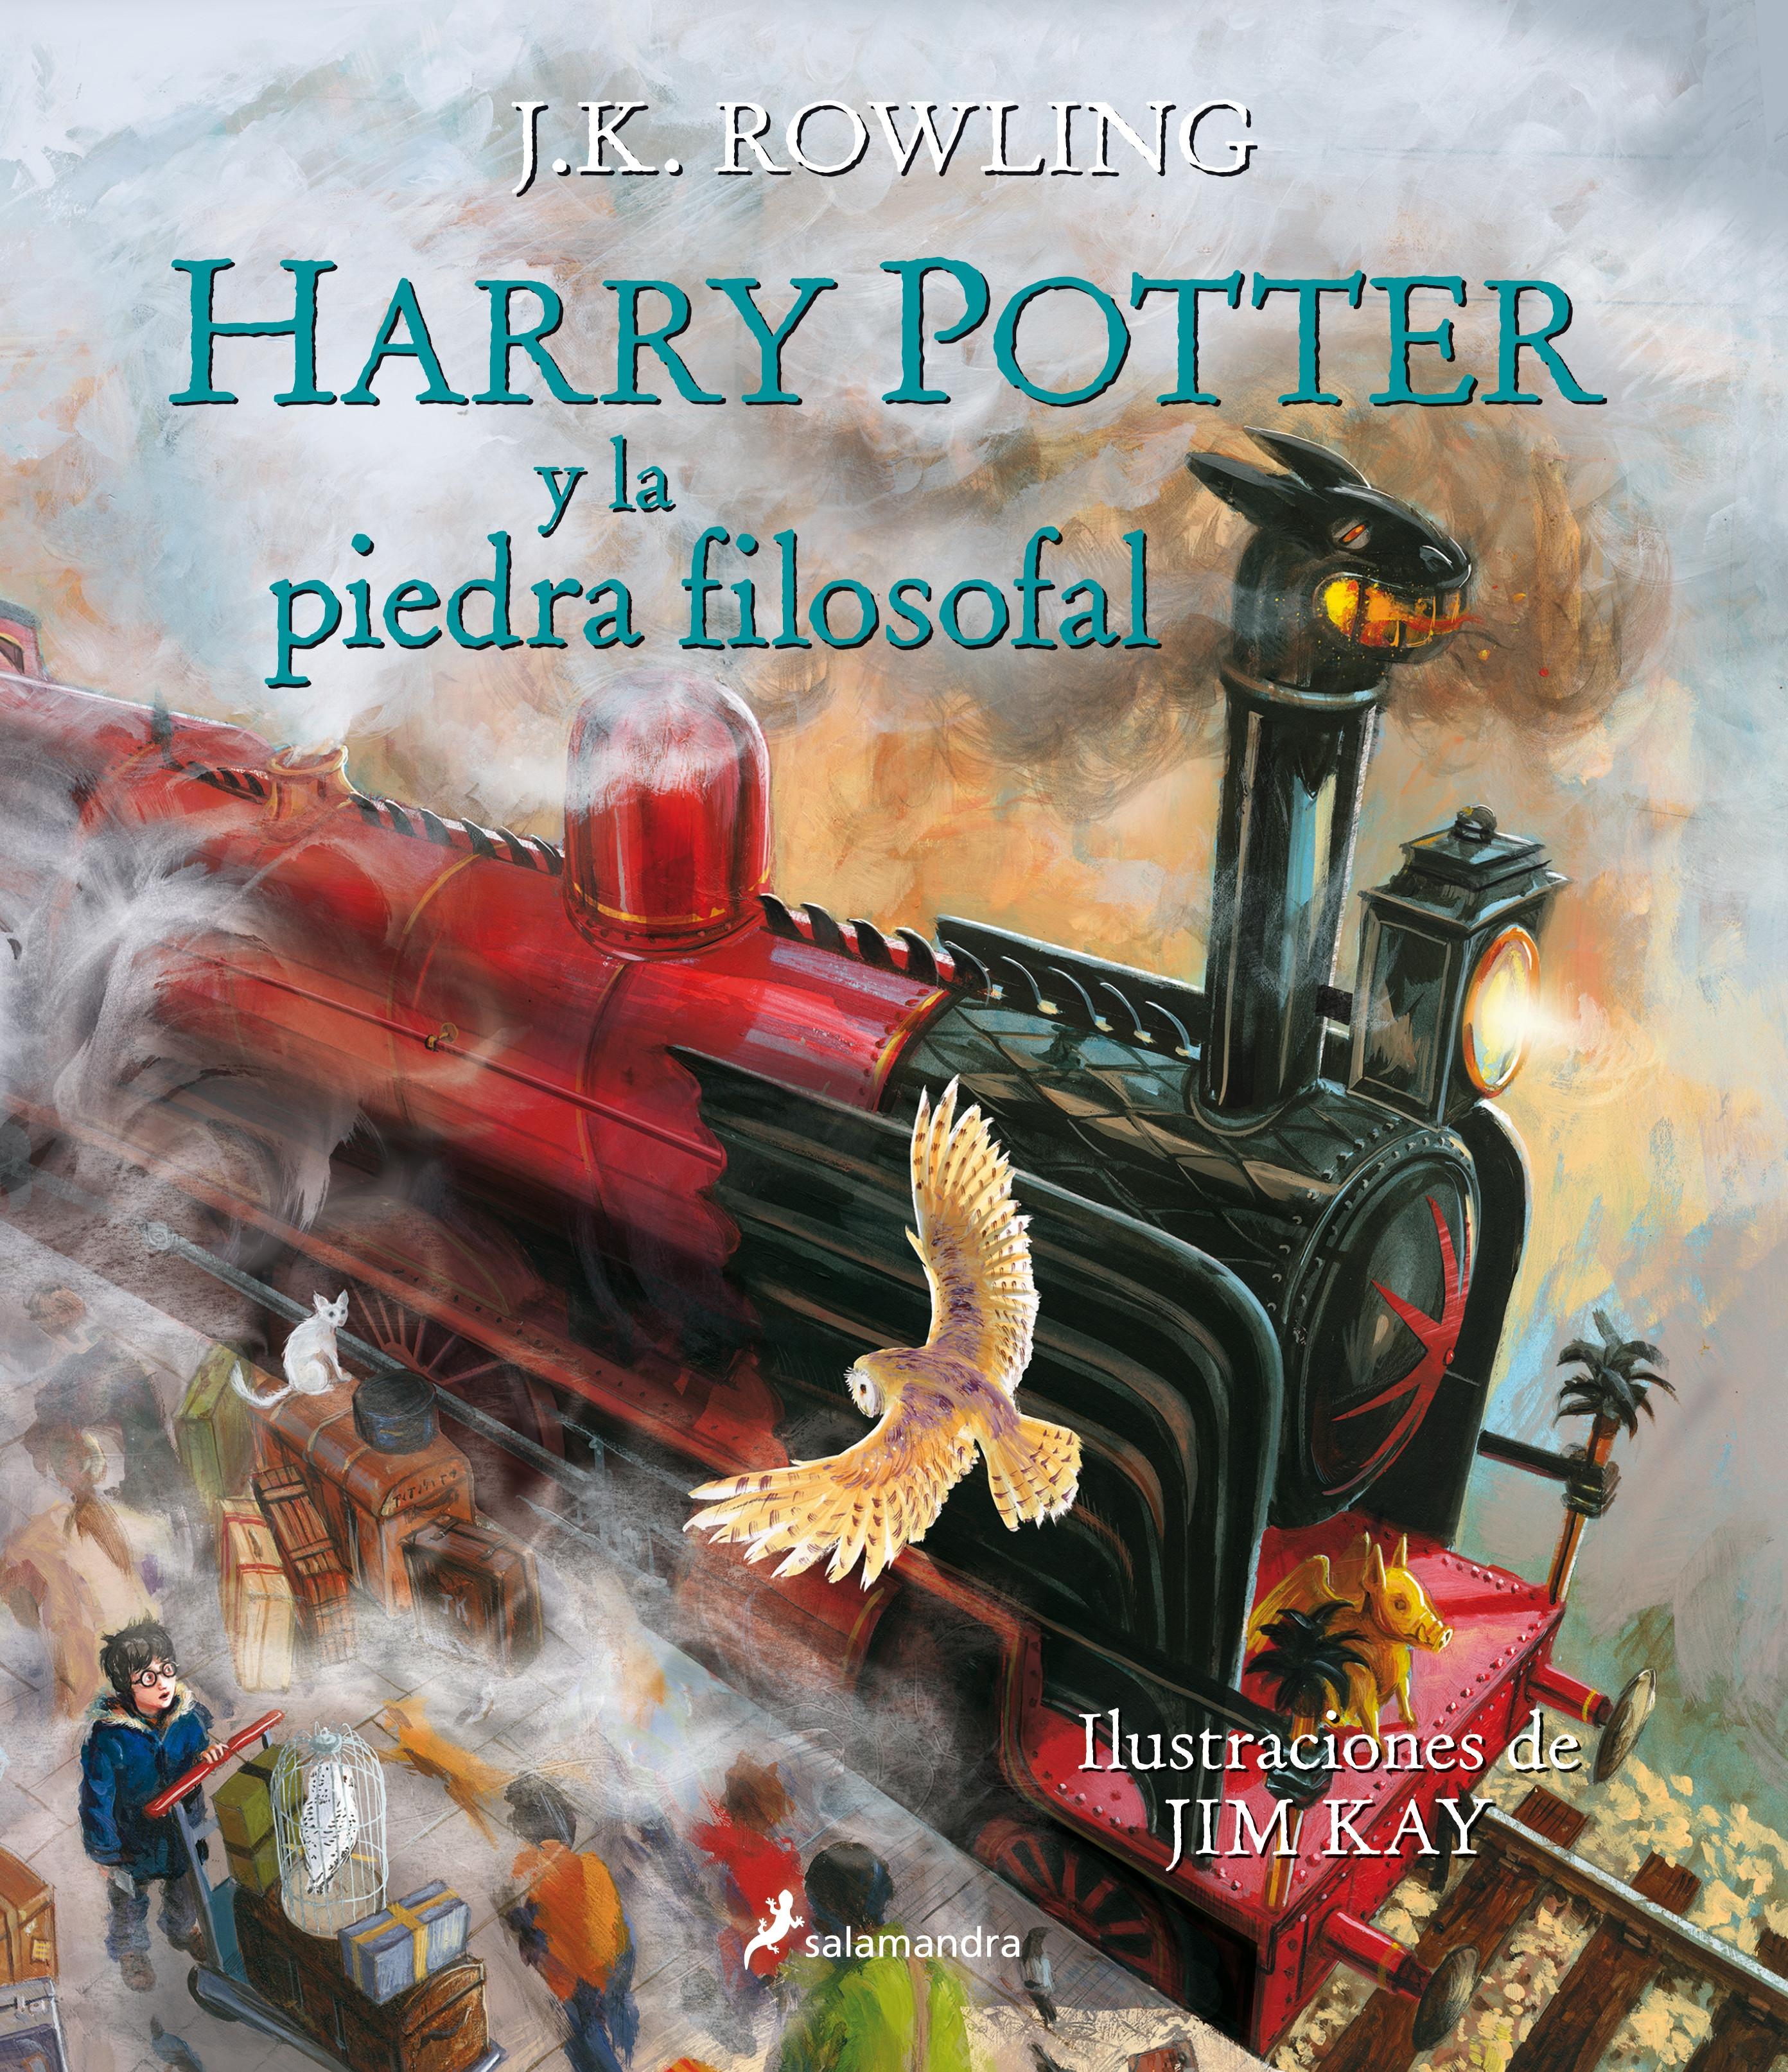 Harry Potter y la piedra filosofal "(Harry Potter - 1) (Edición ilustrada. Rústica)". 